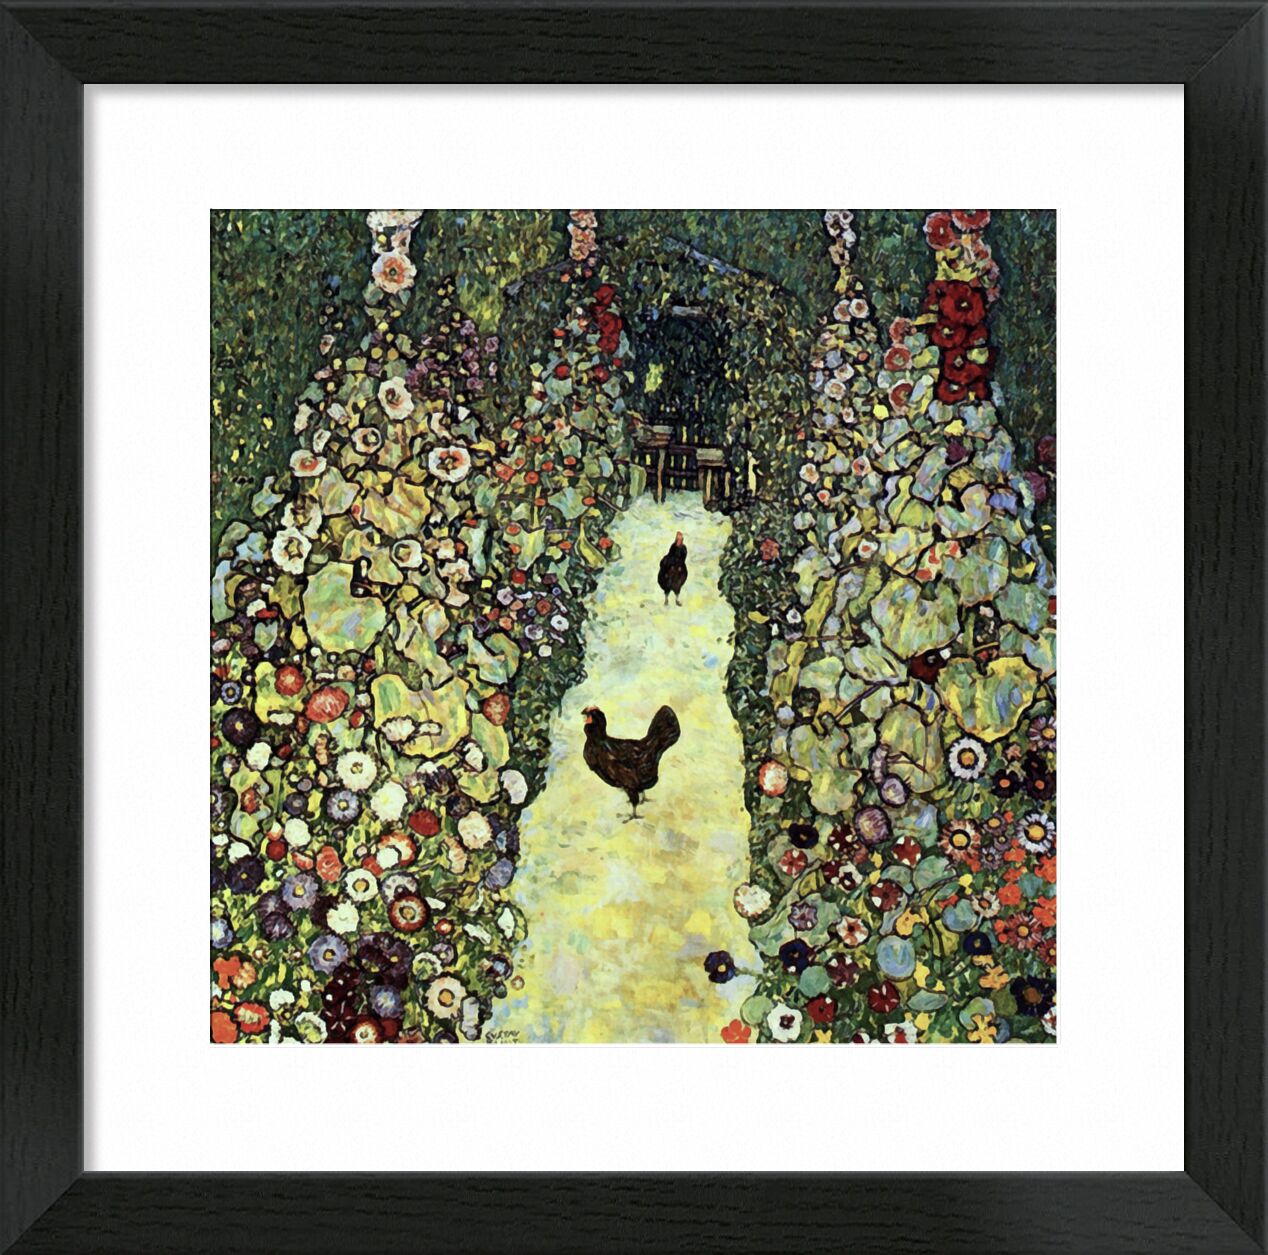 Garden Path with Chickens - Gustav Klimt von Bildende Kunst, Prodi Art, KLIMT, Natur, Bauernhof, Bauer, Landwirtschaft, Malerei, Henne, Landschaft, Hähnchen